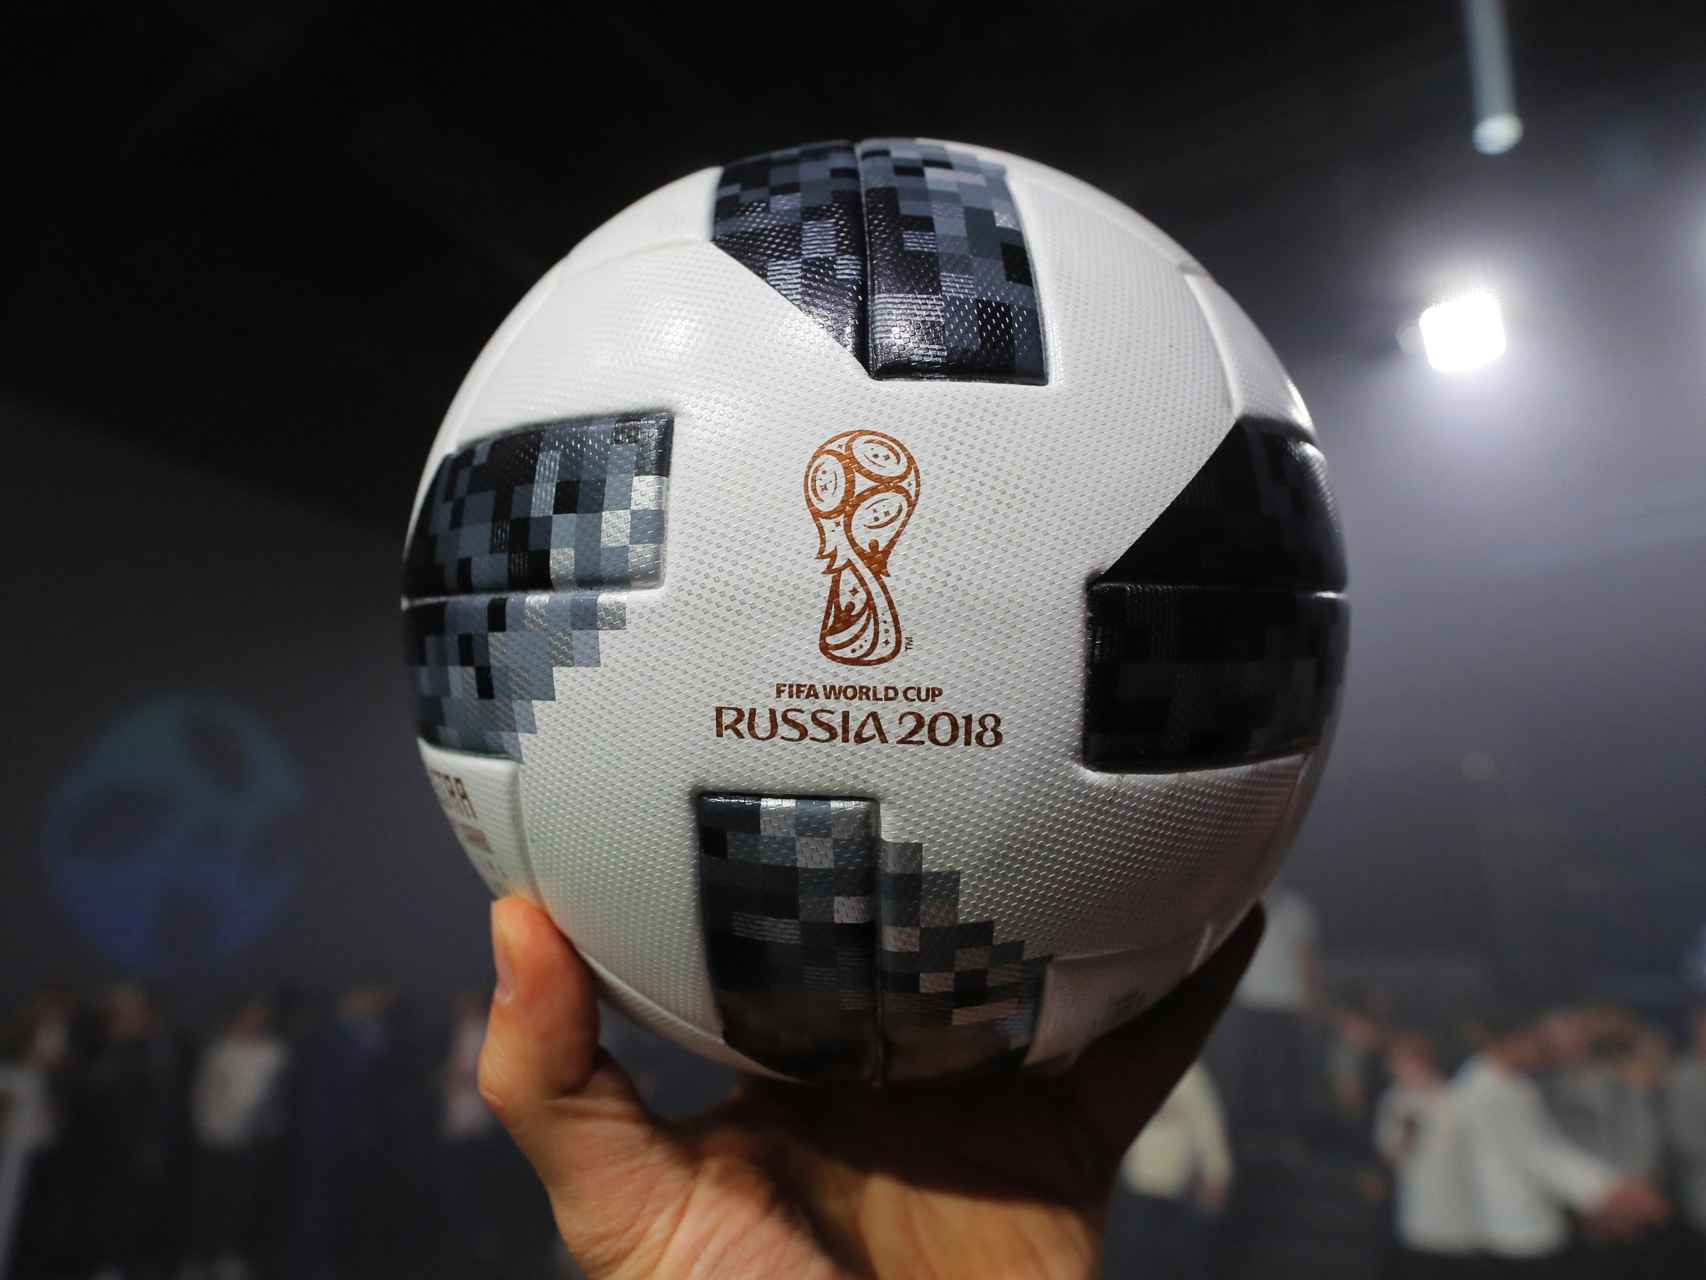 Detalle del Telstar 18, balón del Mundial presentado este jueves.